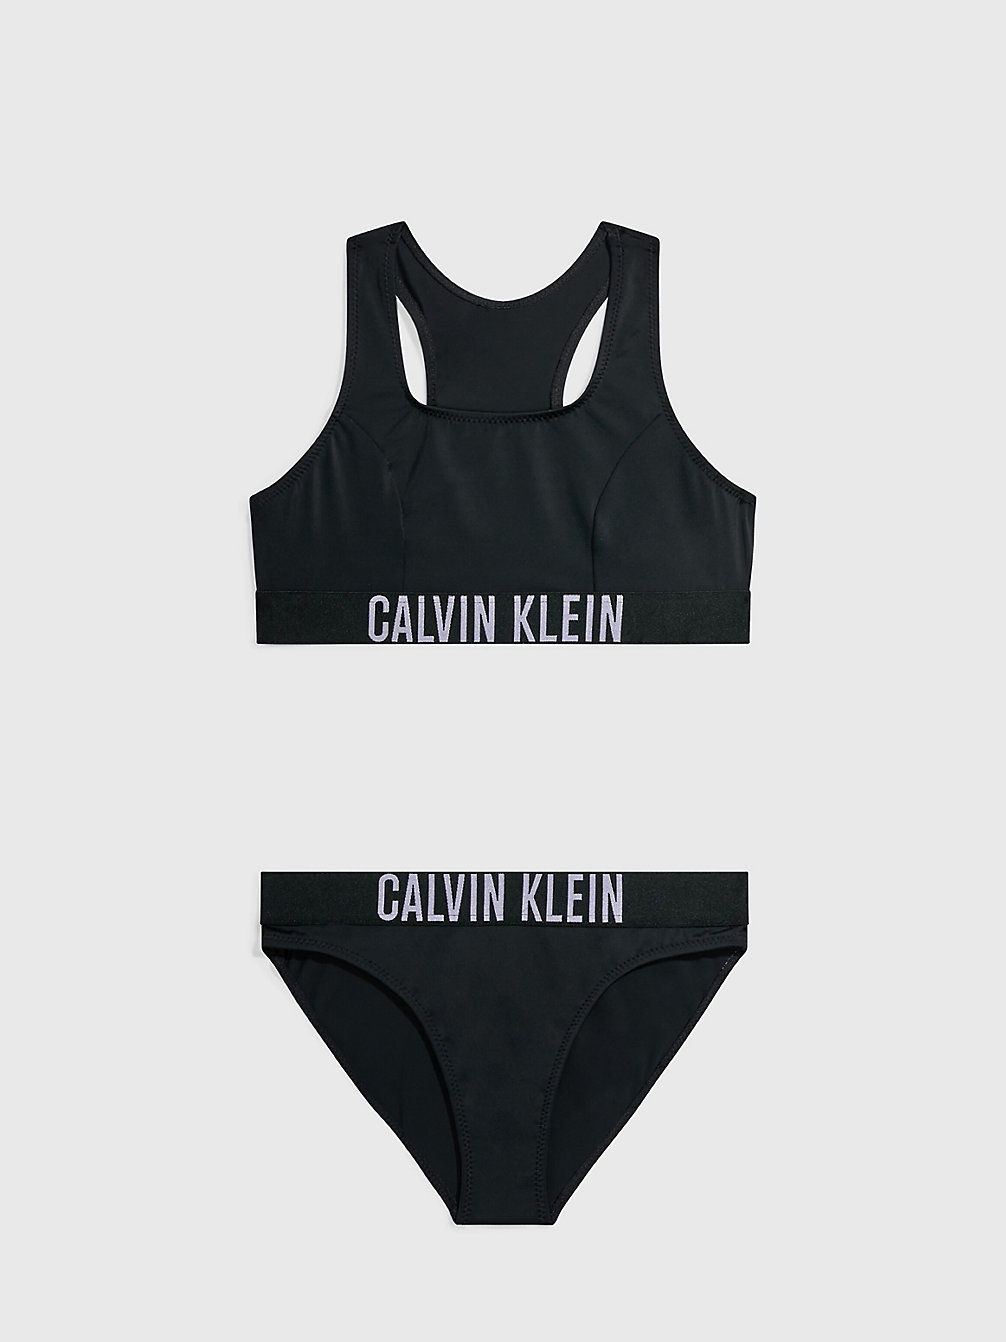 PVH BLACK > Dziewczęcy Zestaw Bikini Z Braletką- Intense Power > undefined girls - Calvin Klein